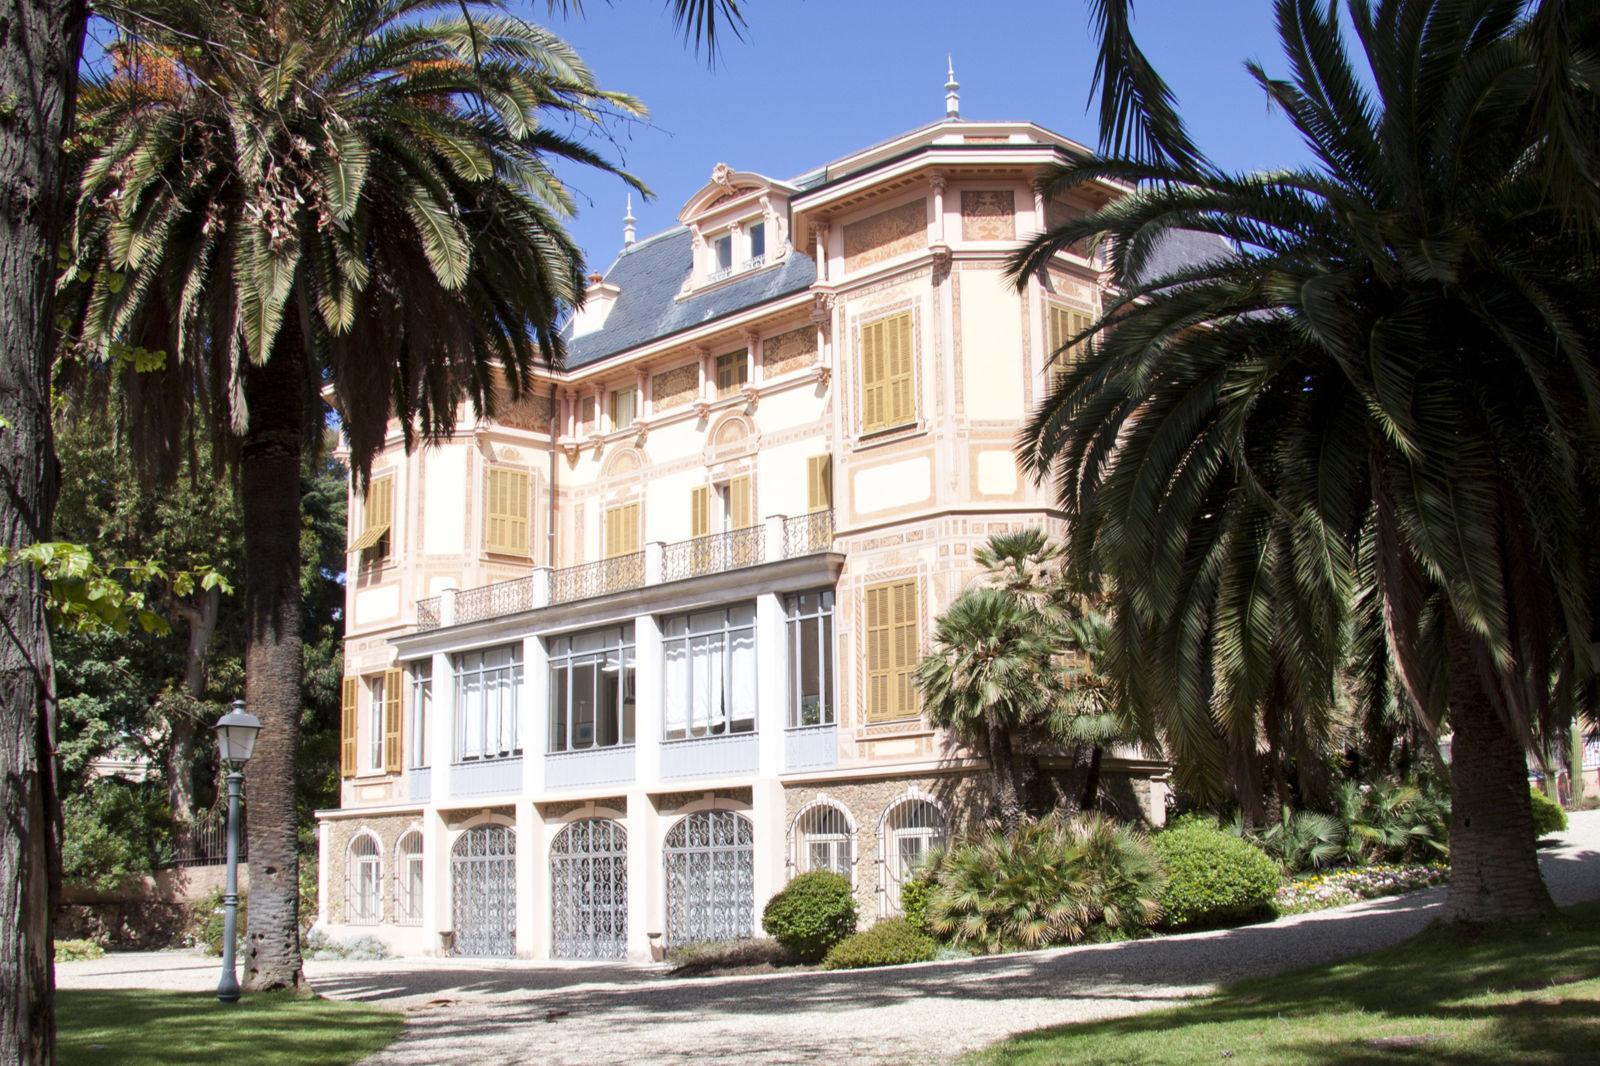 Liguria - Villa Nobel